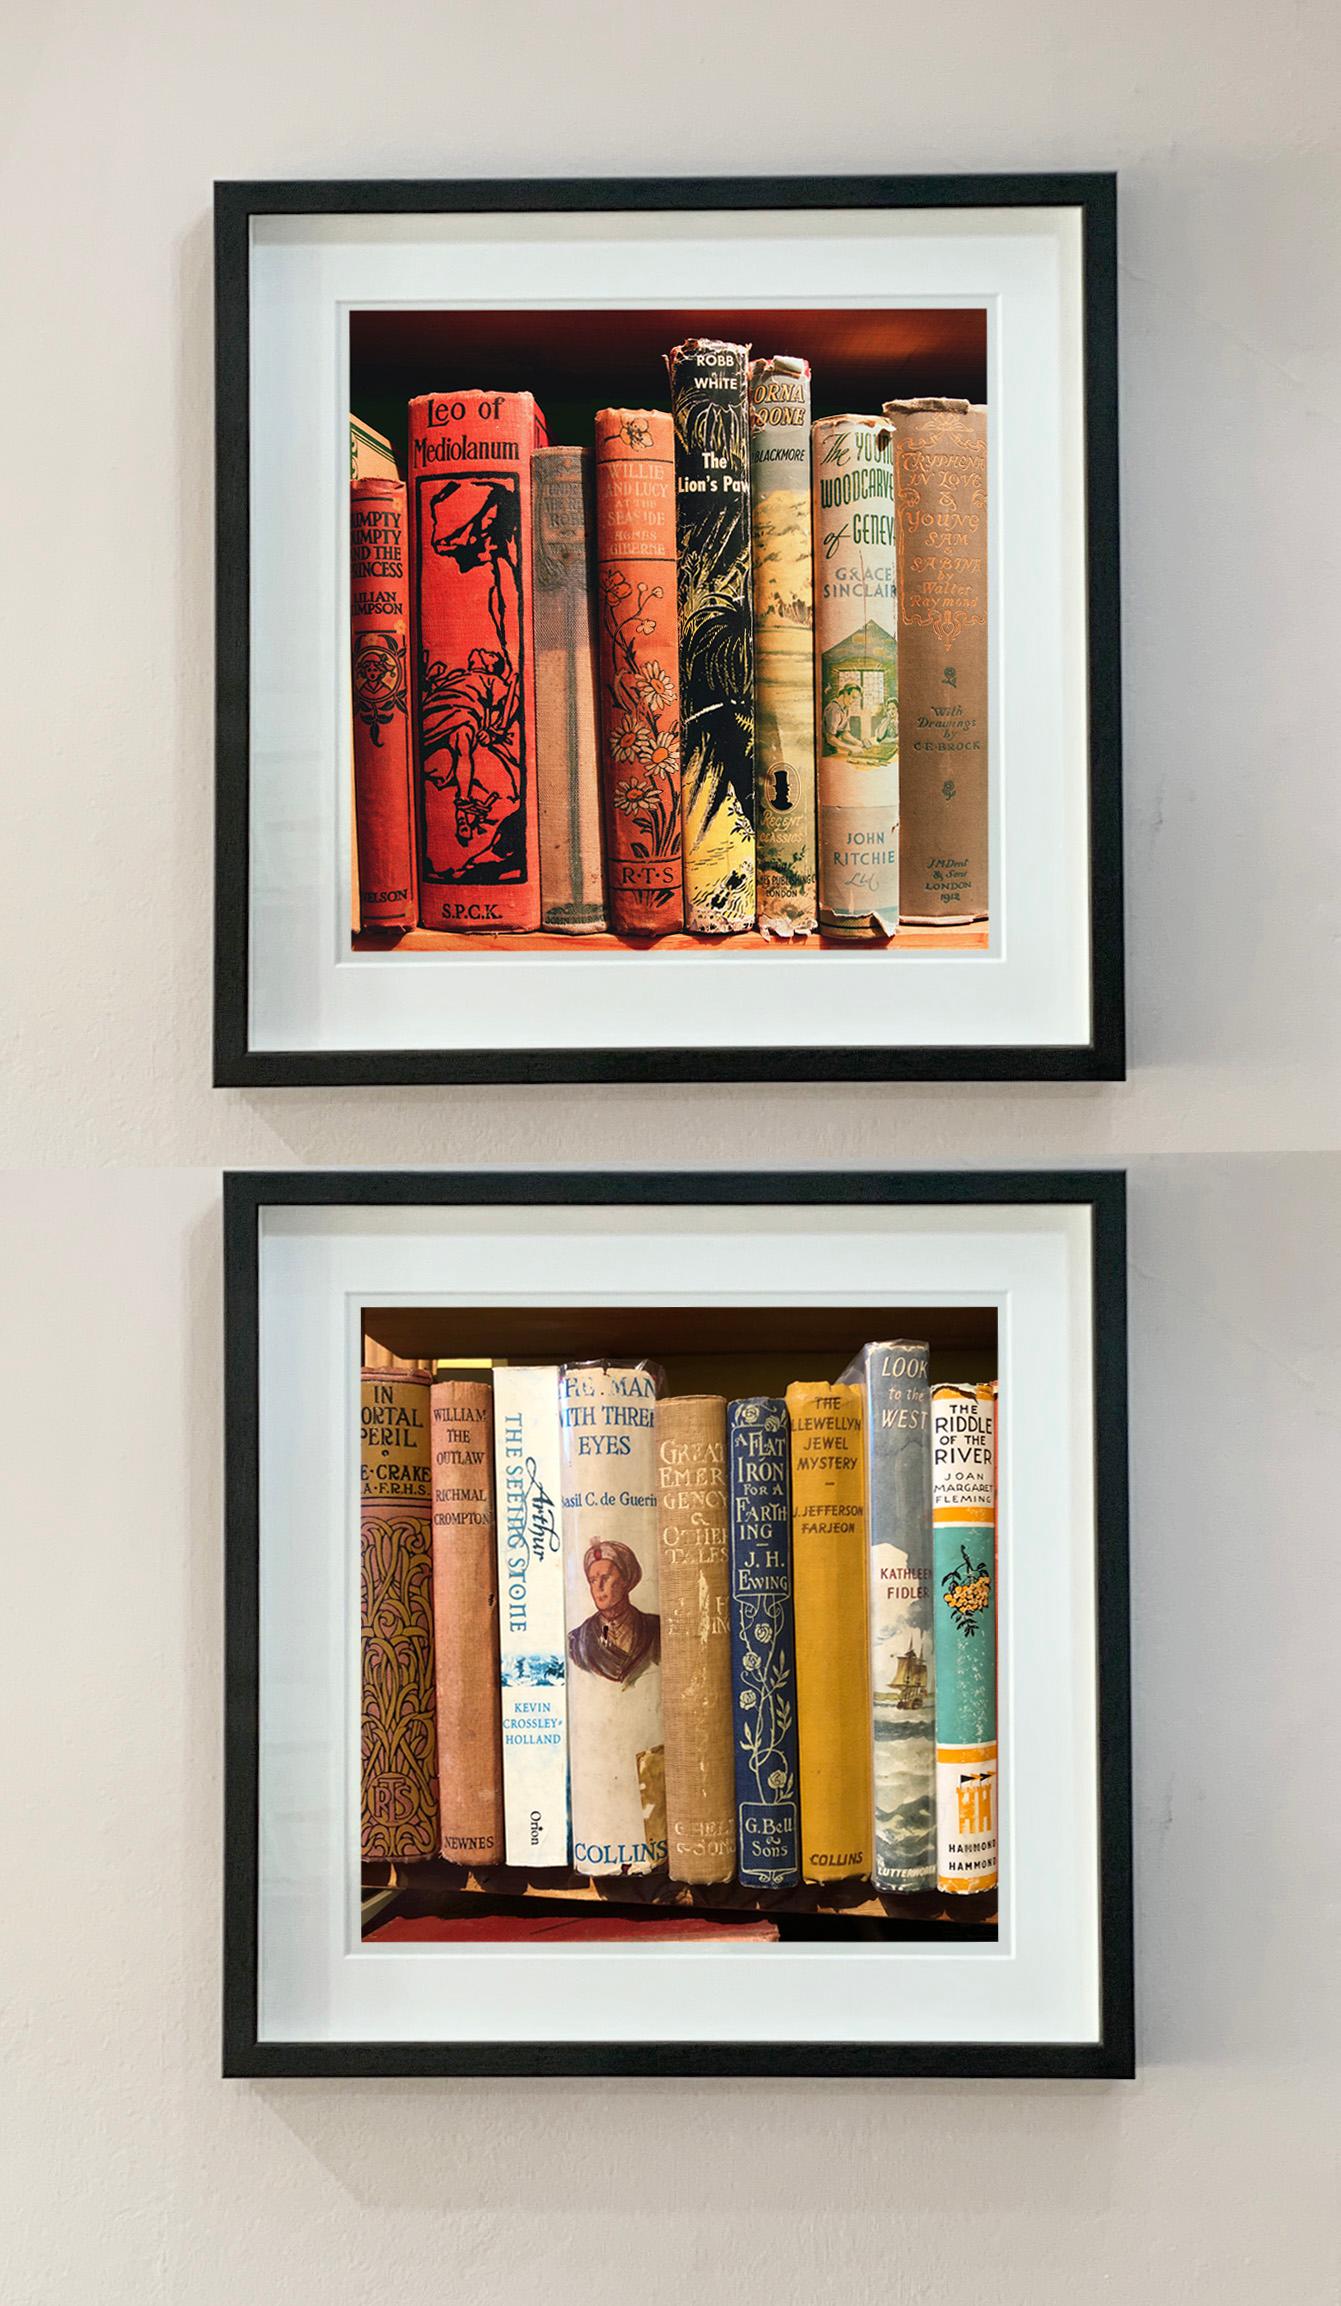 Riddle of the River, présente une collection de dos de livres anciens sur une étagère, dans une photographie de Richard Heeps tirée de sa série In The Treasure Trove. Pris dans une librairie d'occasion de Norfolk, le motif linéaire est une signature